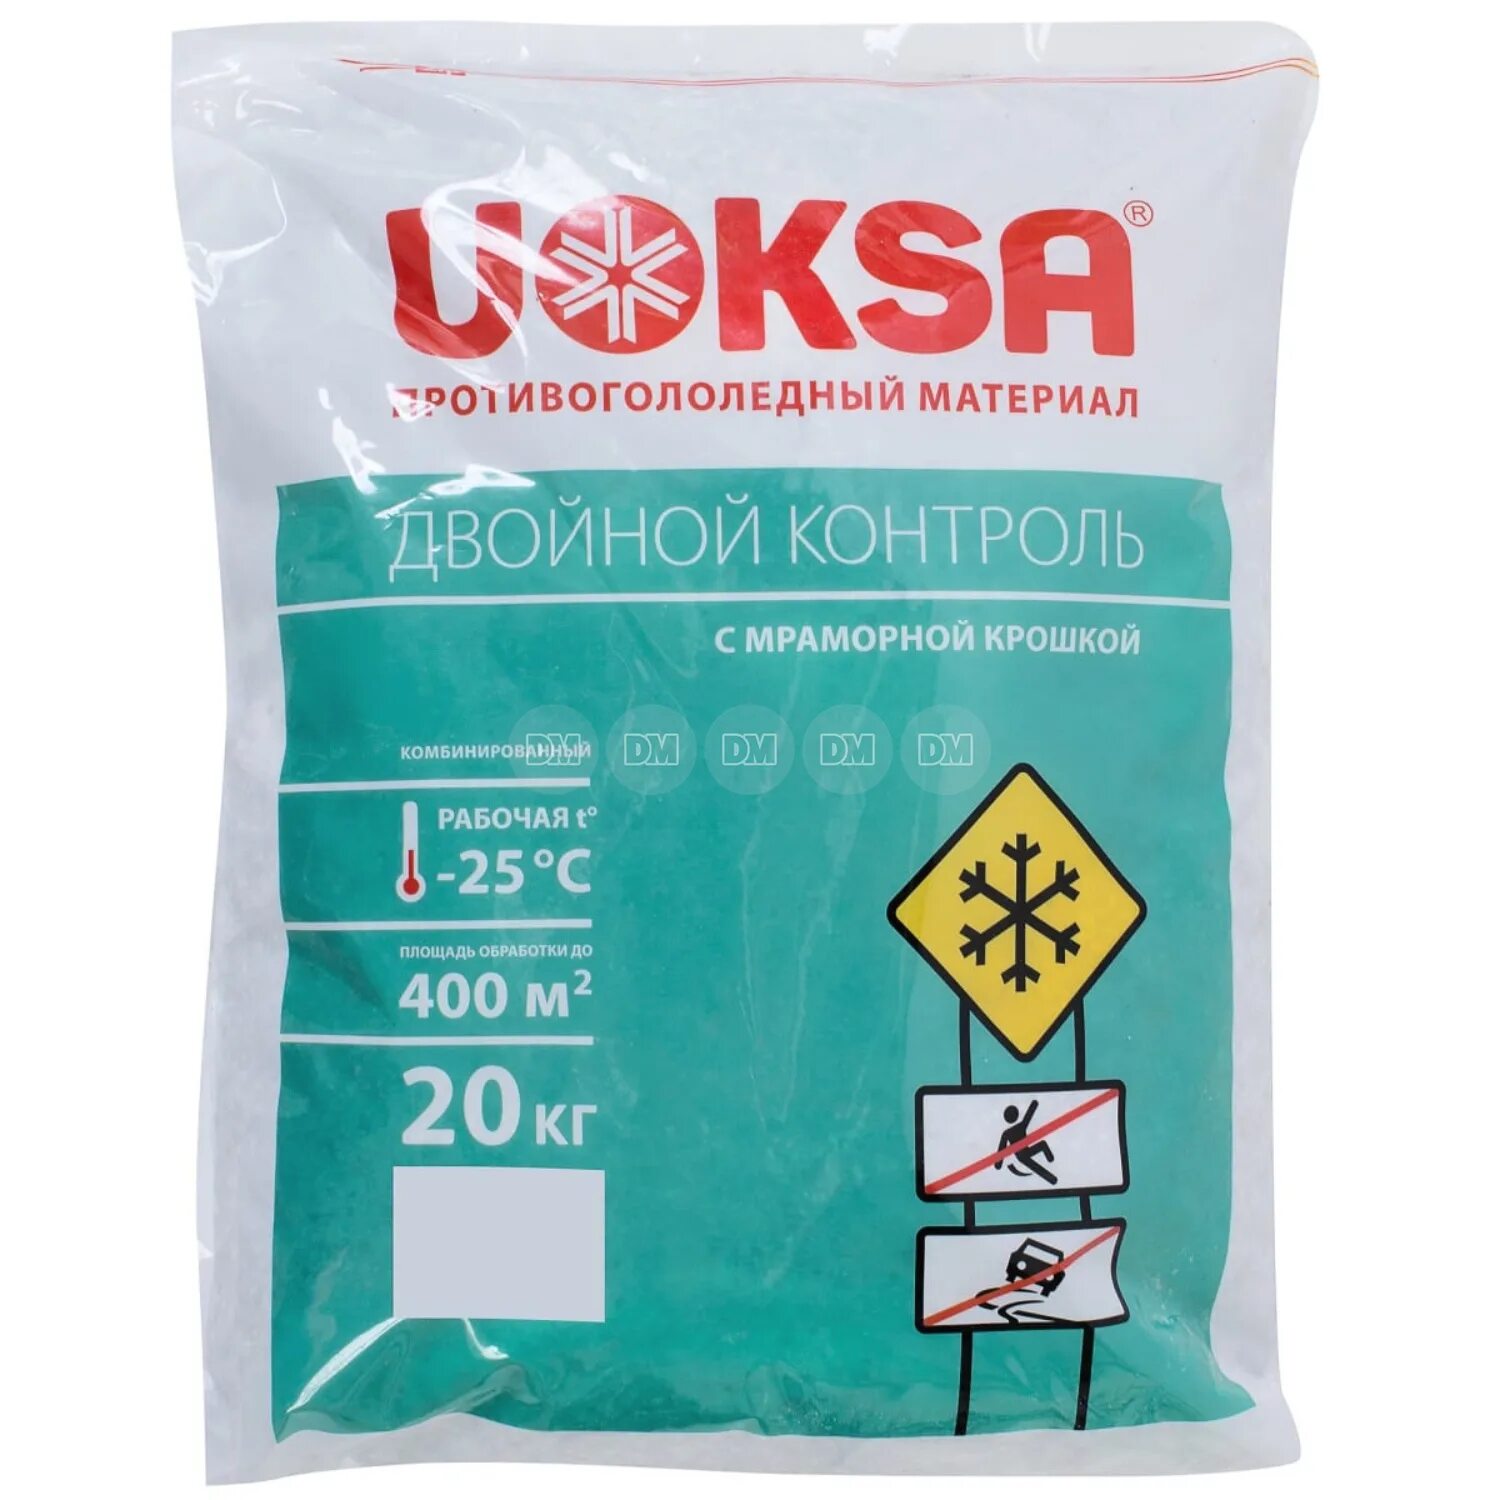 Реагент противогололедный 25 кг. Противогололедный реагент, мешок 20кг ROCKMELT Salt. Противогололедный материал UOKSA (Уокса) двойной контроль до -25°, 20 кг. UOKSA двойной контроль реагент -25 c 20кг. Реагент UOKSA Актив -30°c, 20кг мешок.